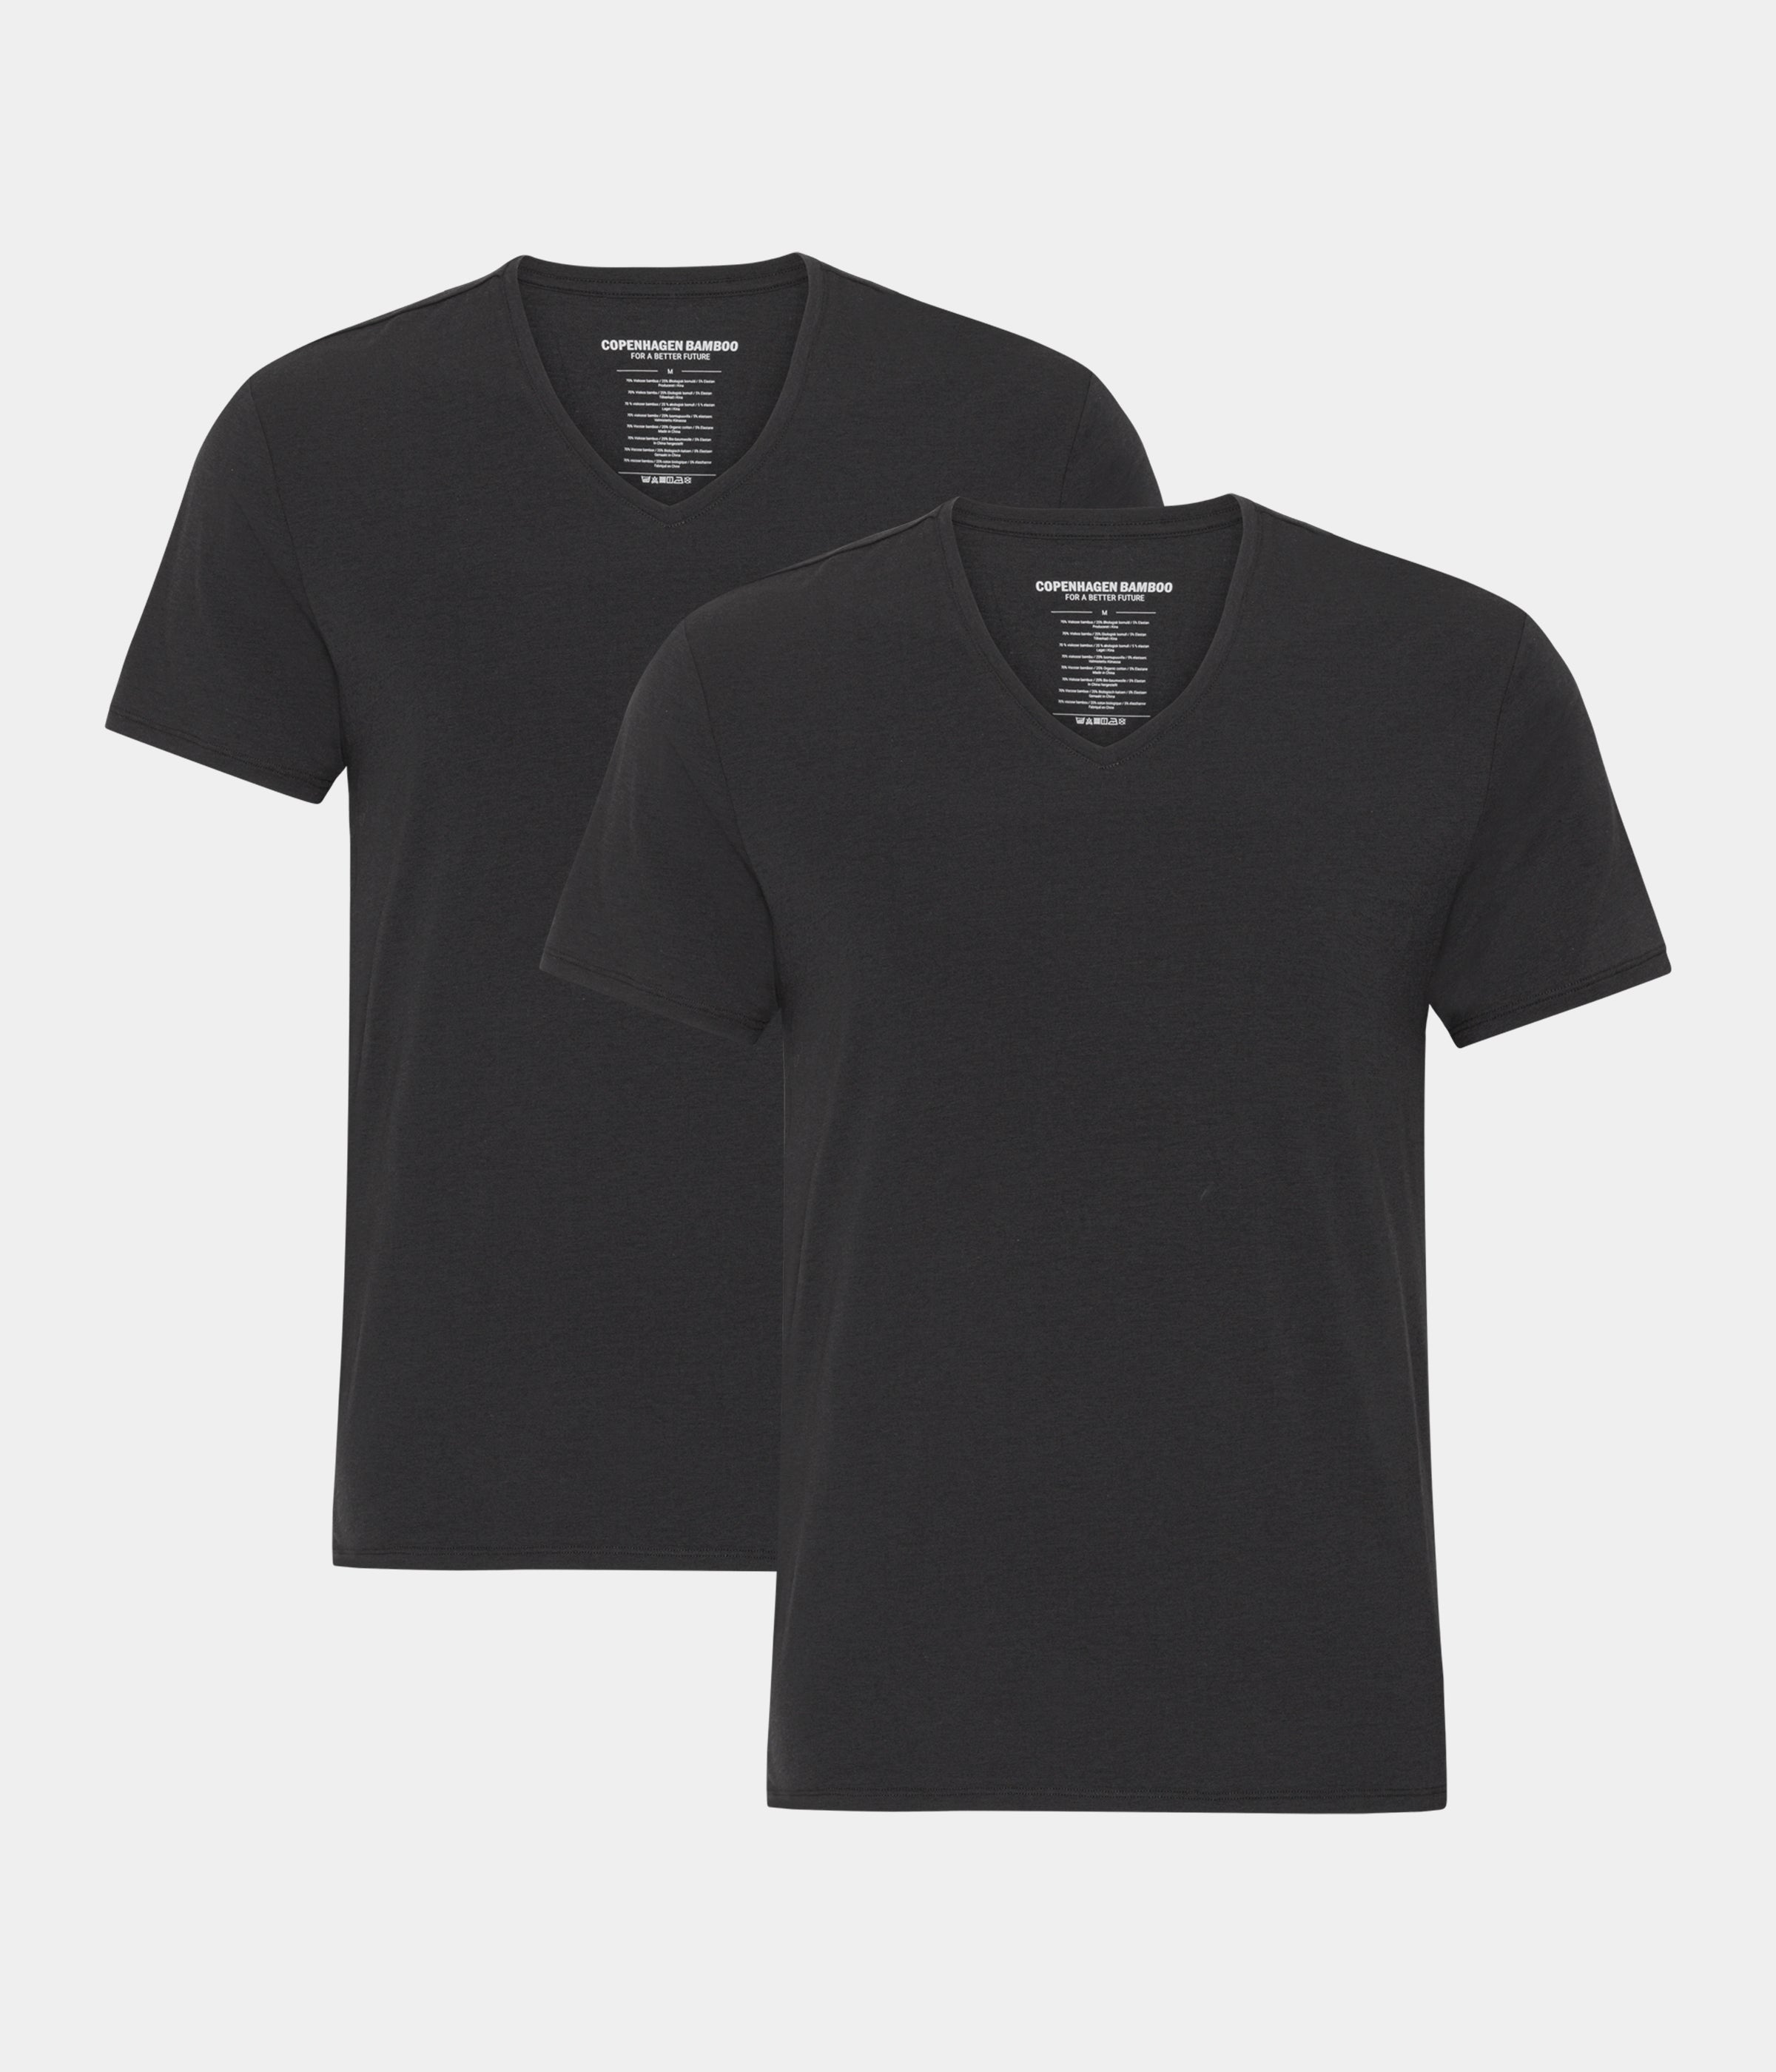 2 stk sorte bambus slim fit T-shirt med v-hals til mænd fra Copenhagen Bamboo, S